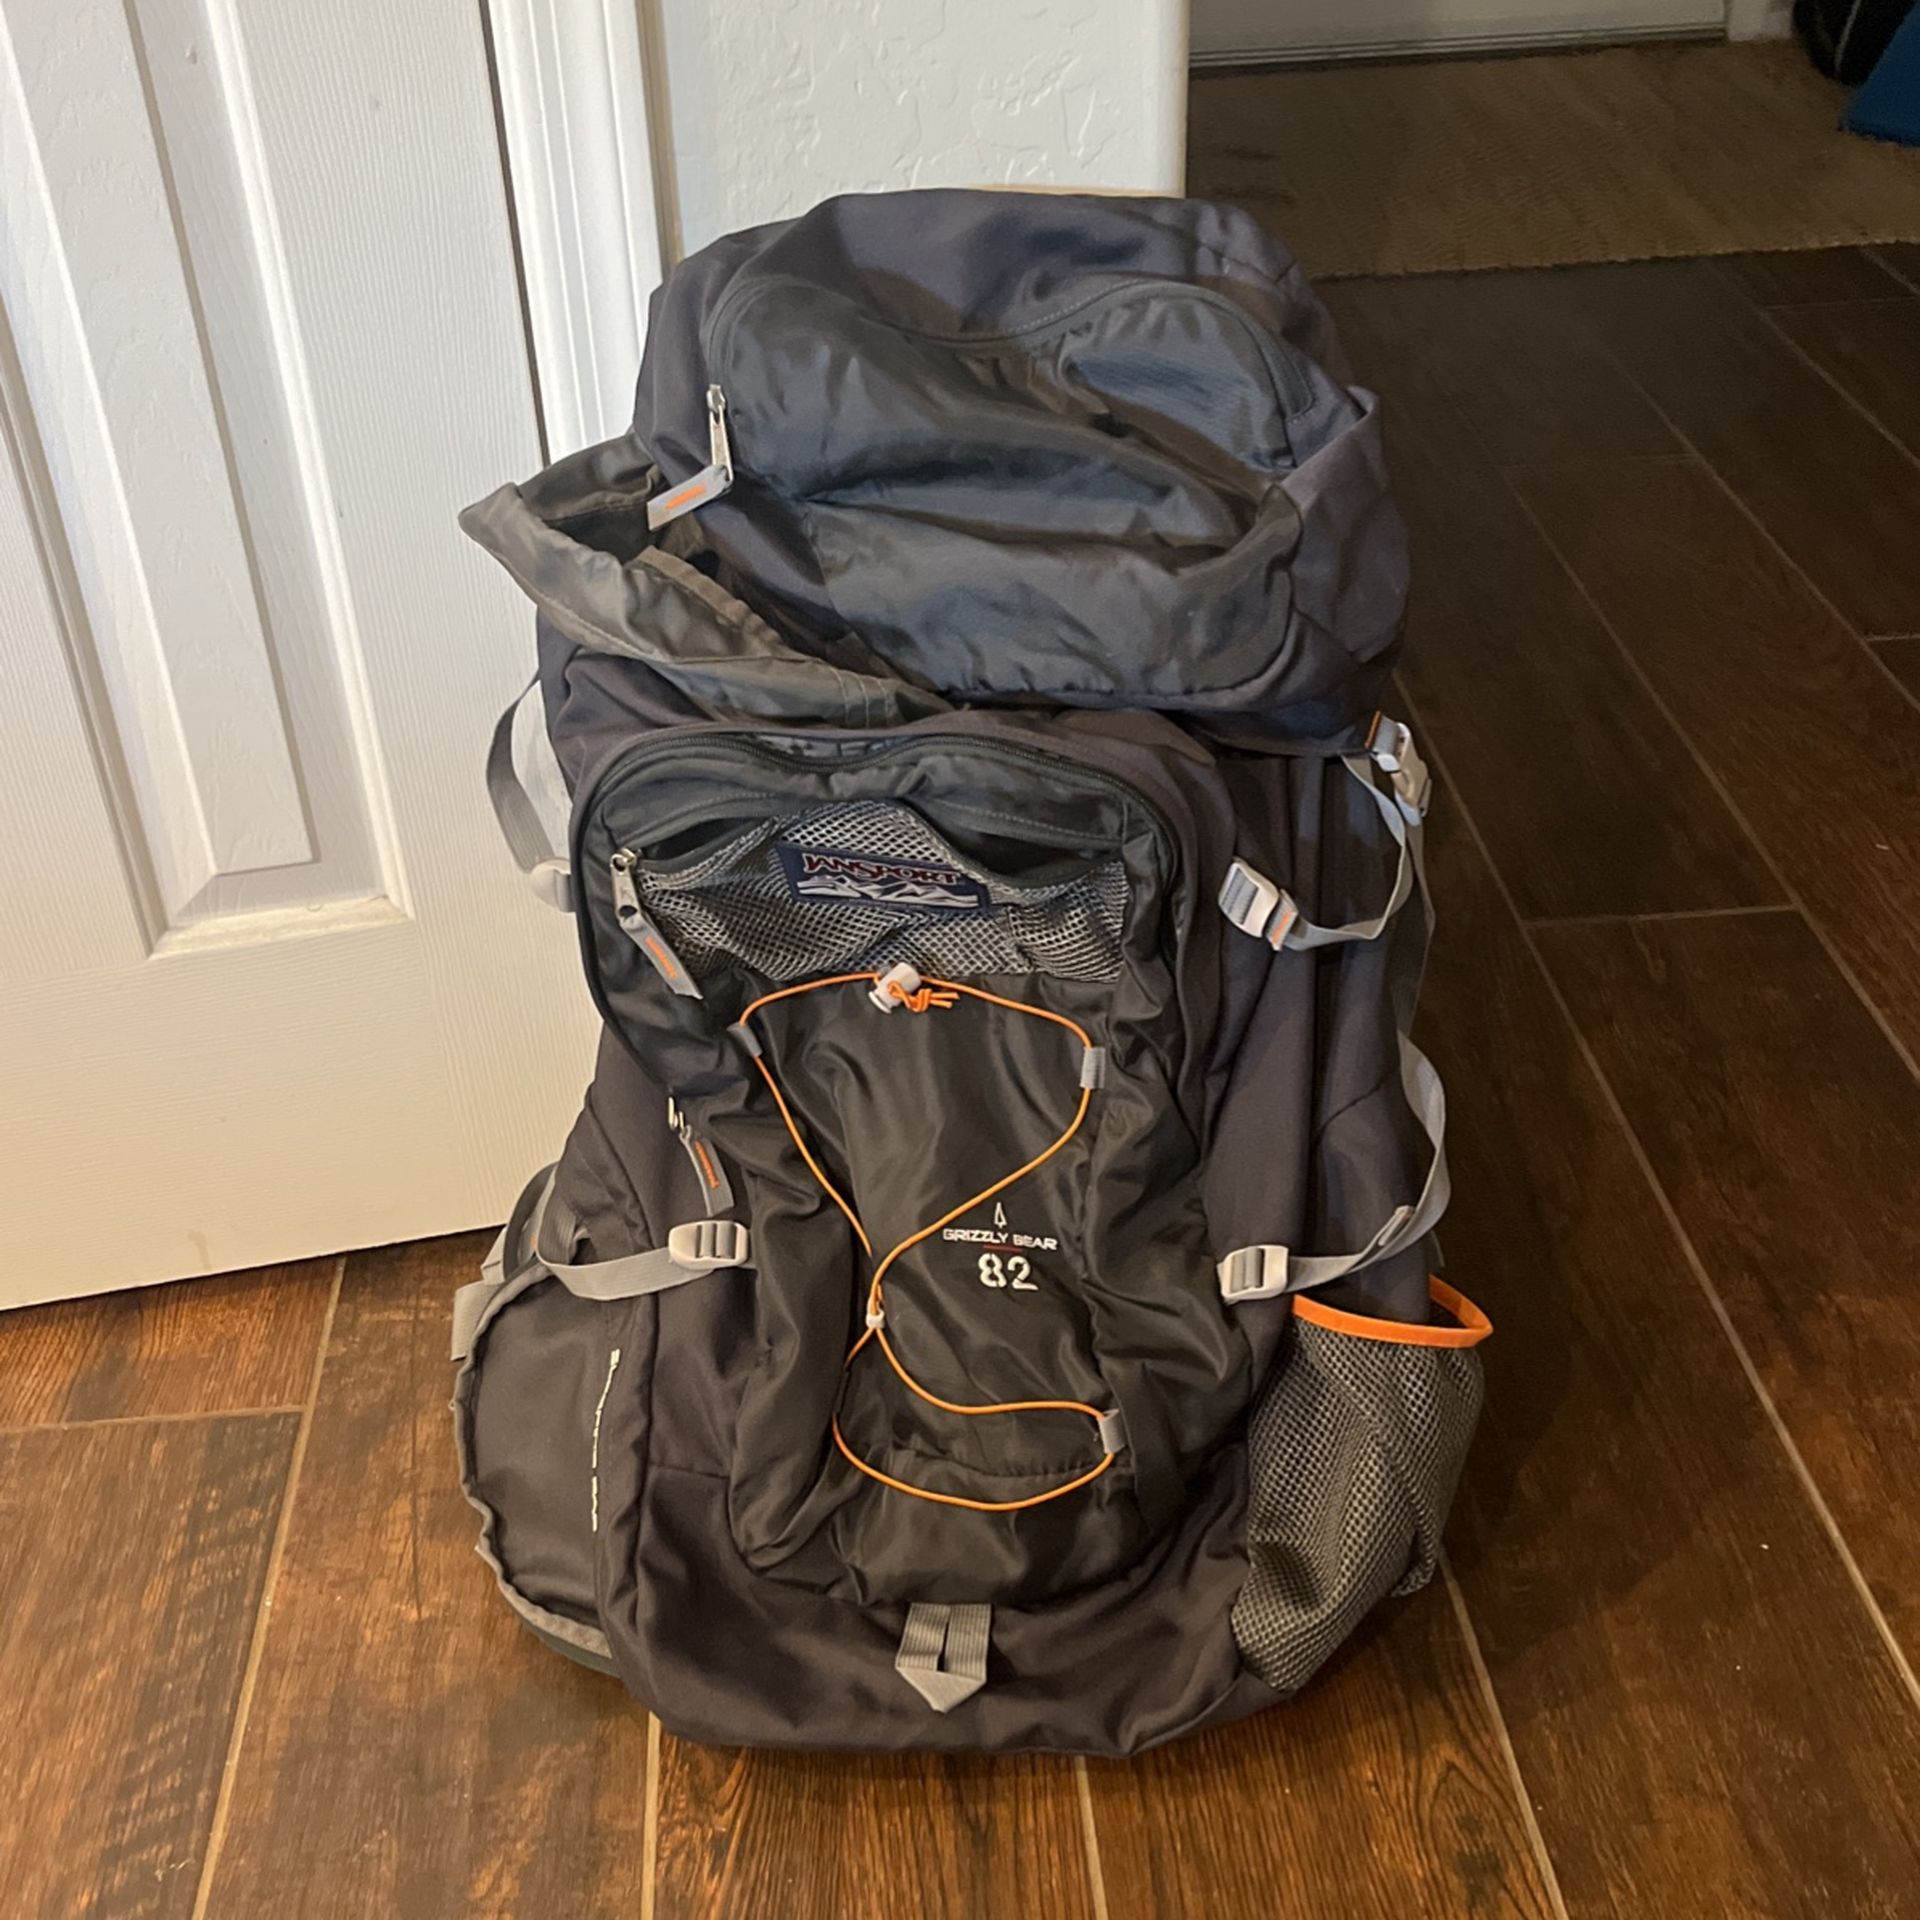 82L Hiking backpack